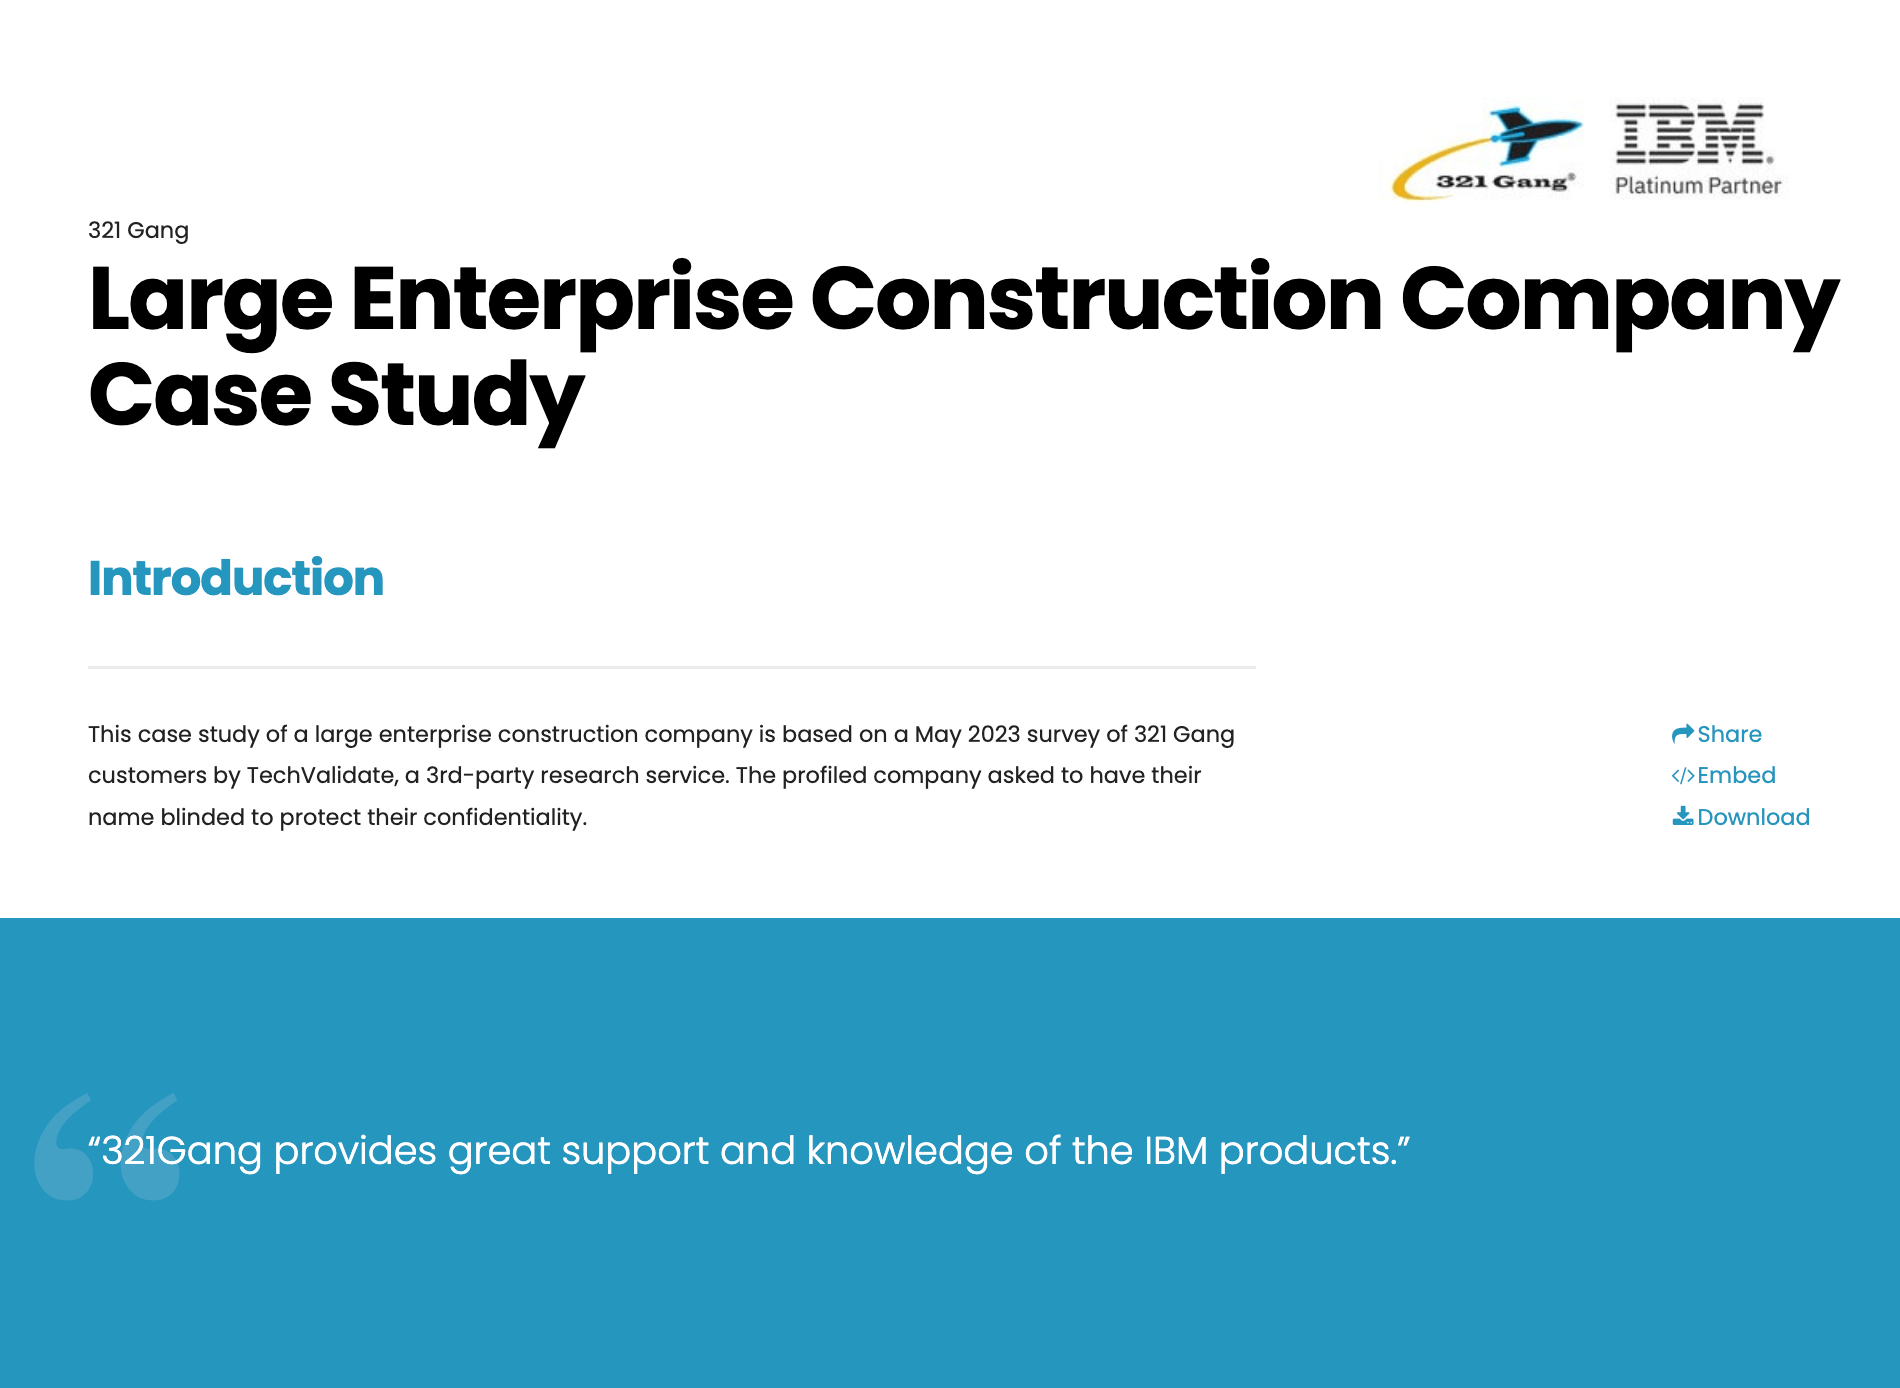 Large Enterprise Construction Company Case Study preview